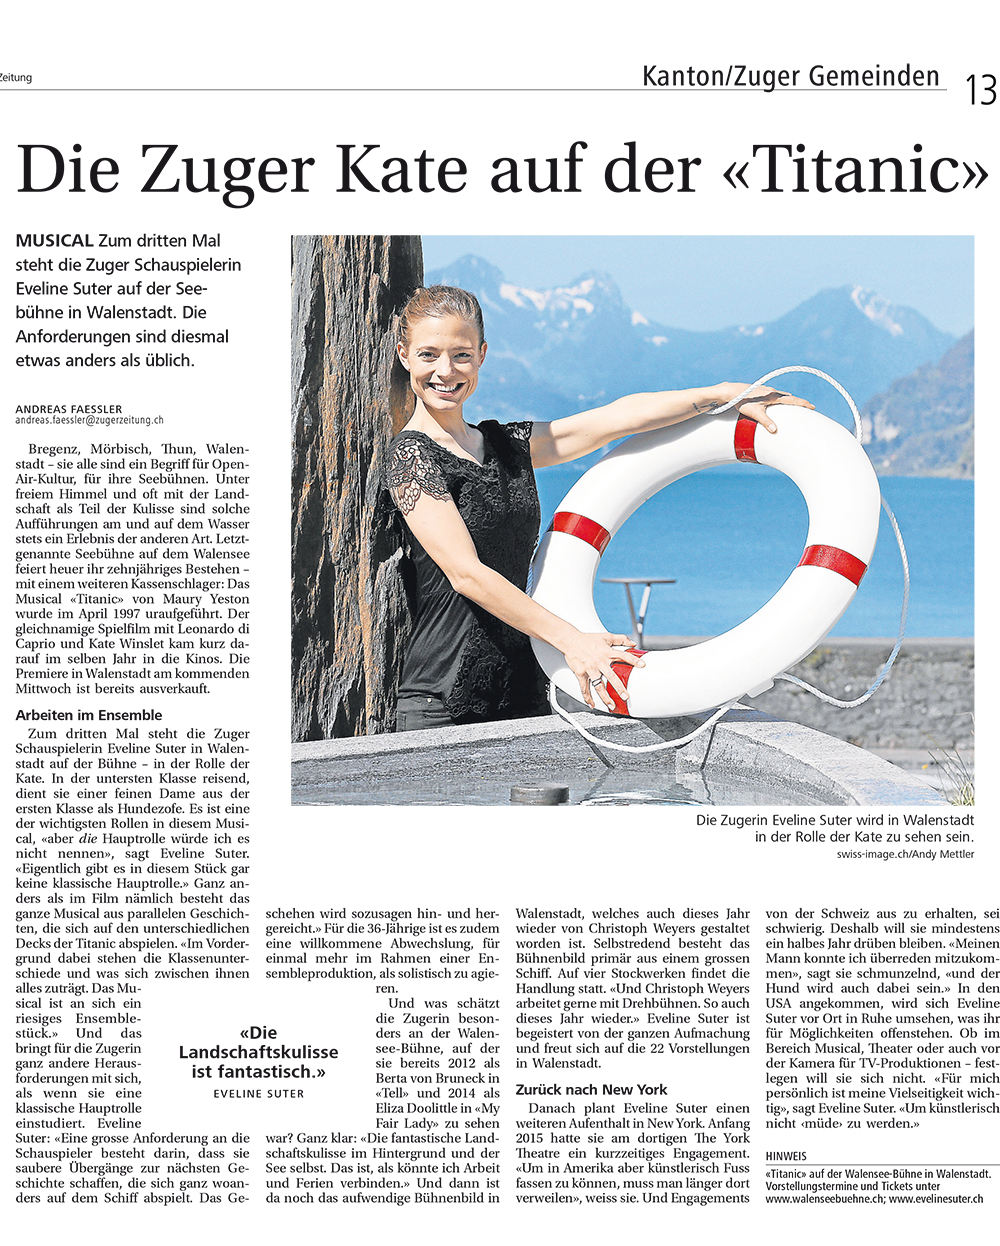 Neue Zuger Zeitung / Juli 2015